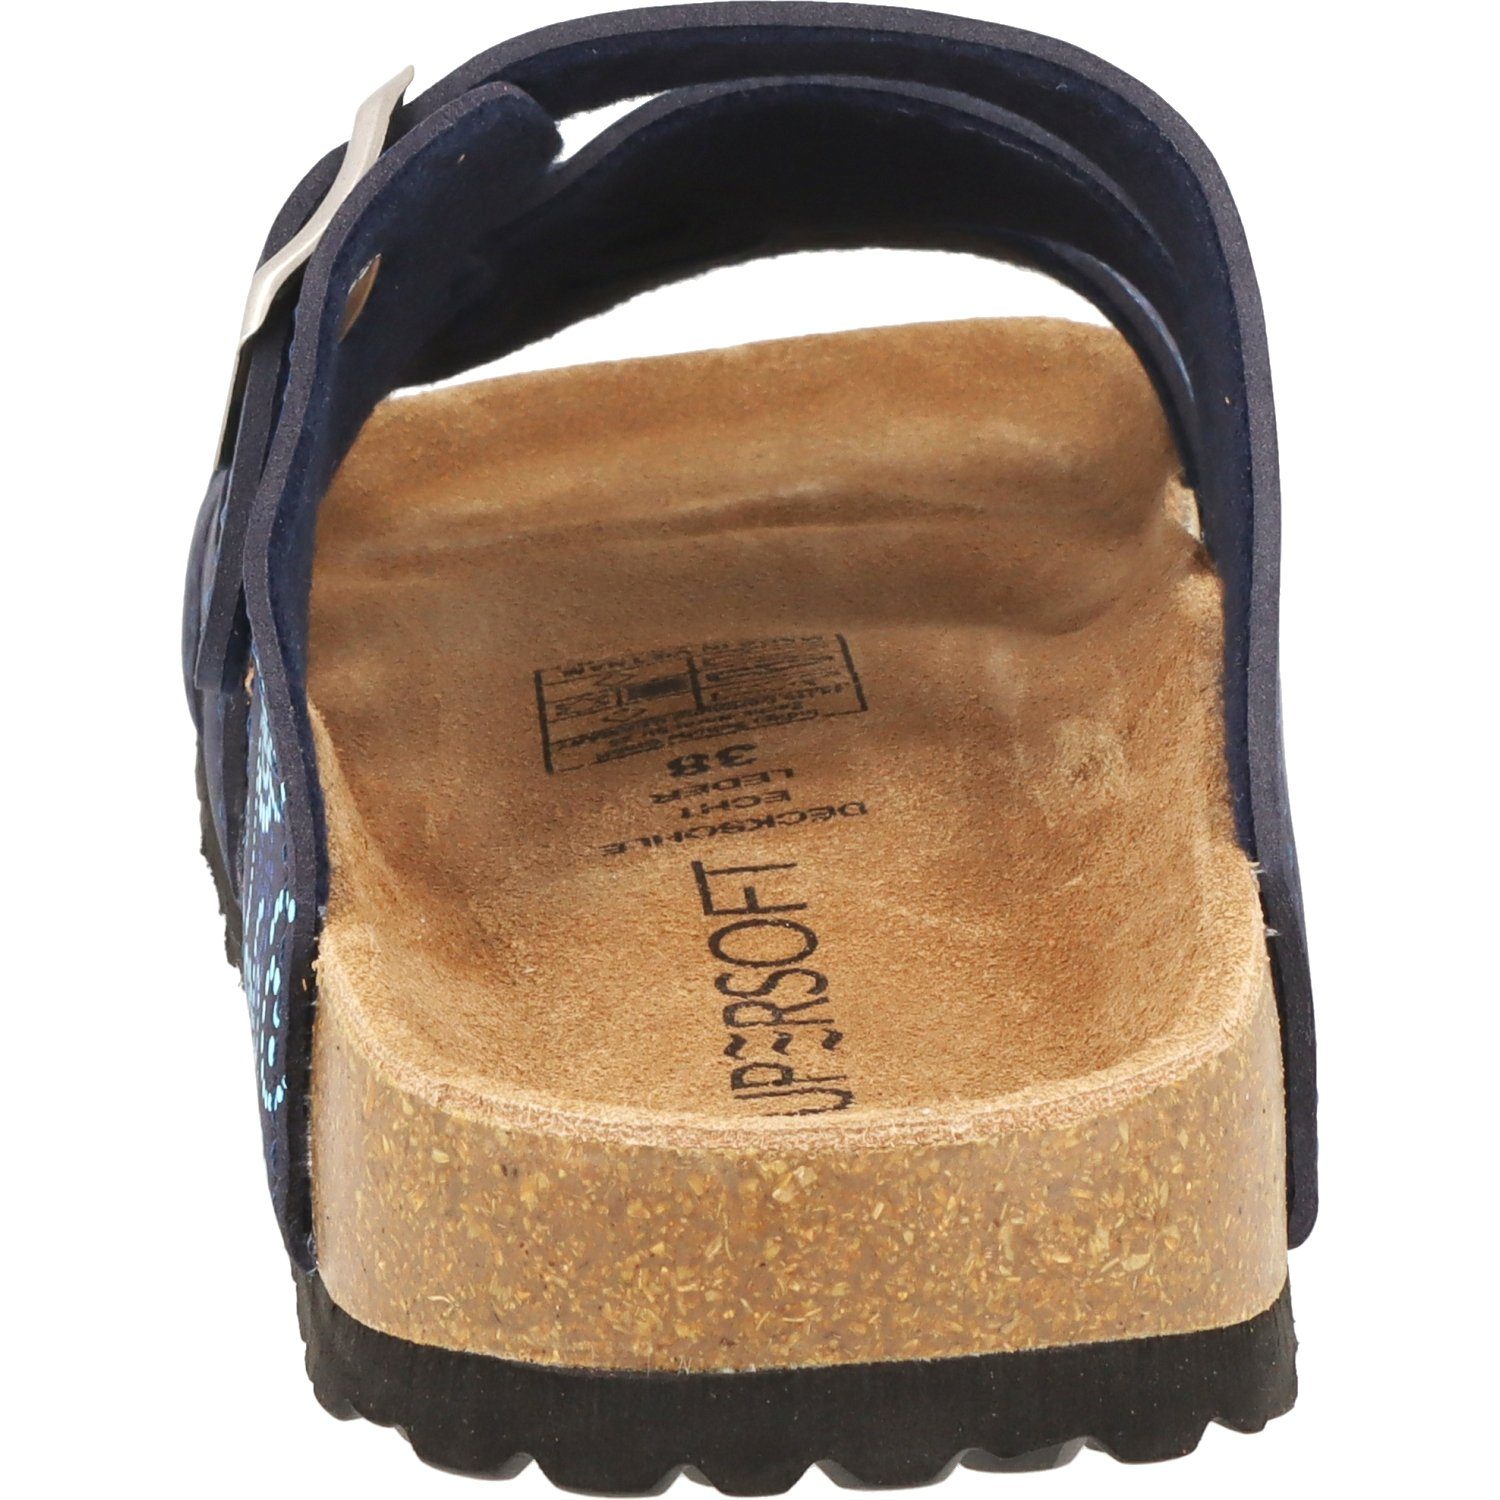 Navy Damen Hausschuhe Schuhe Pantolette Sandale 274-147 SUPERSOFT Lederfußbett